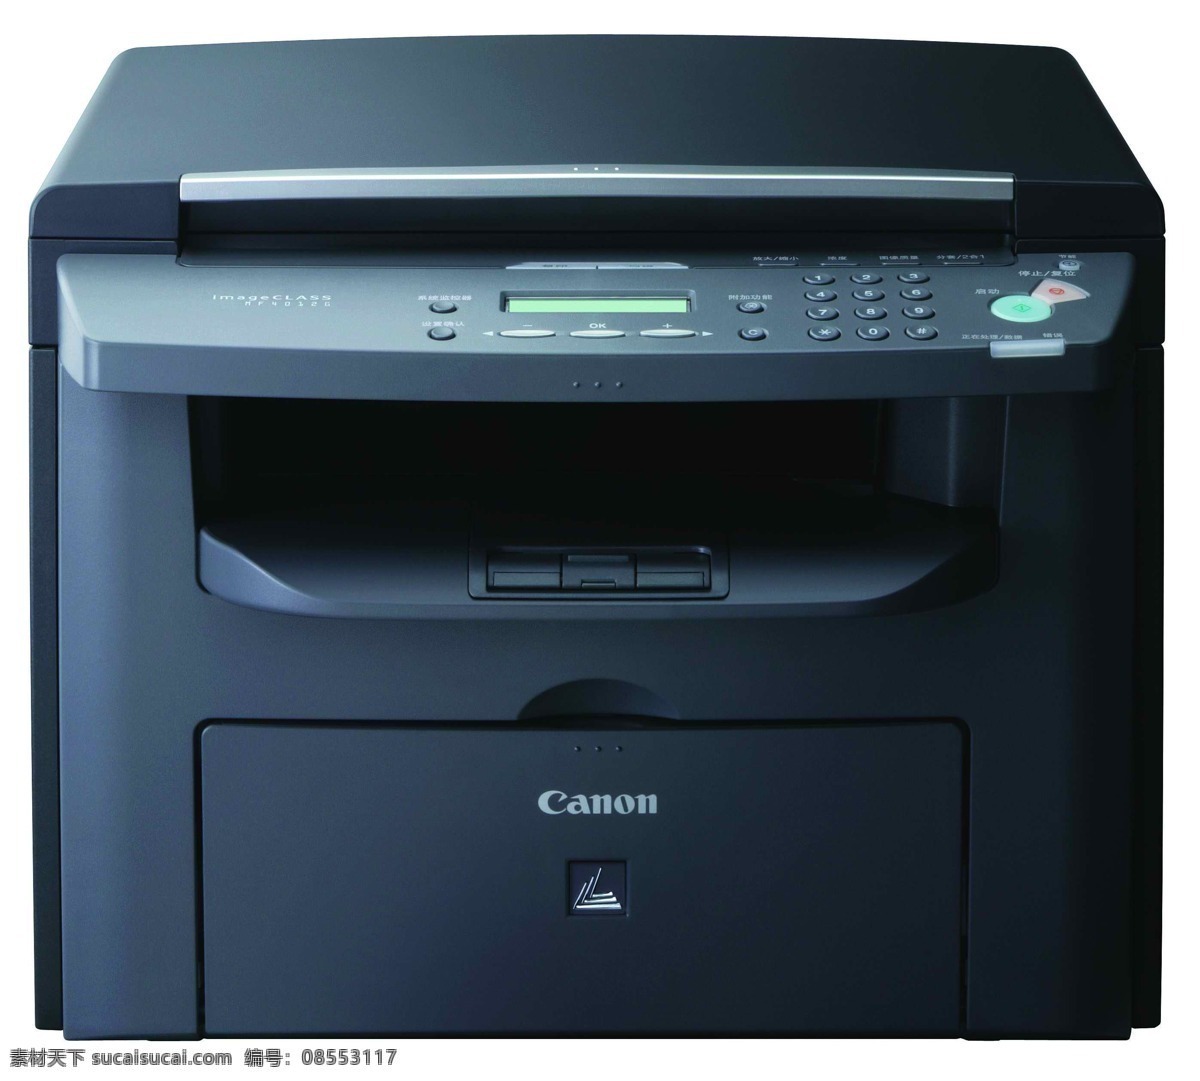 复印机 打印机 扫描仪 佳能 canon imageclass mf4012g usb 激光打印机 照片打印机 电脑 外设 办公 设备 打印 扫描 一体机 佳能打印机 电脑网络 生活百科